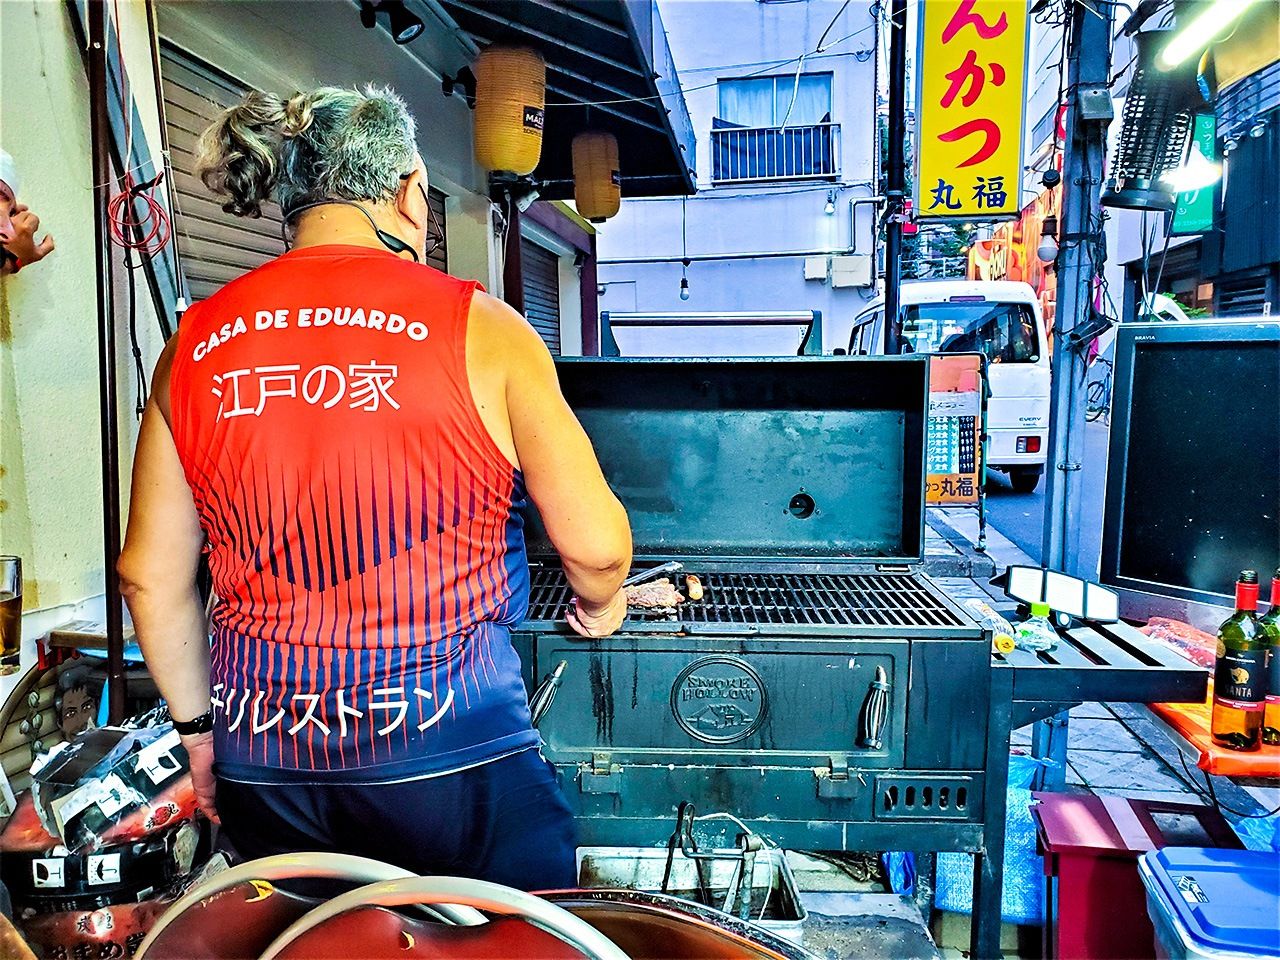 Edo asando la carne frente a su restaurante. (Fotografía del autor) 